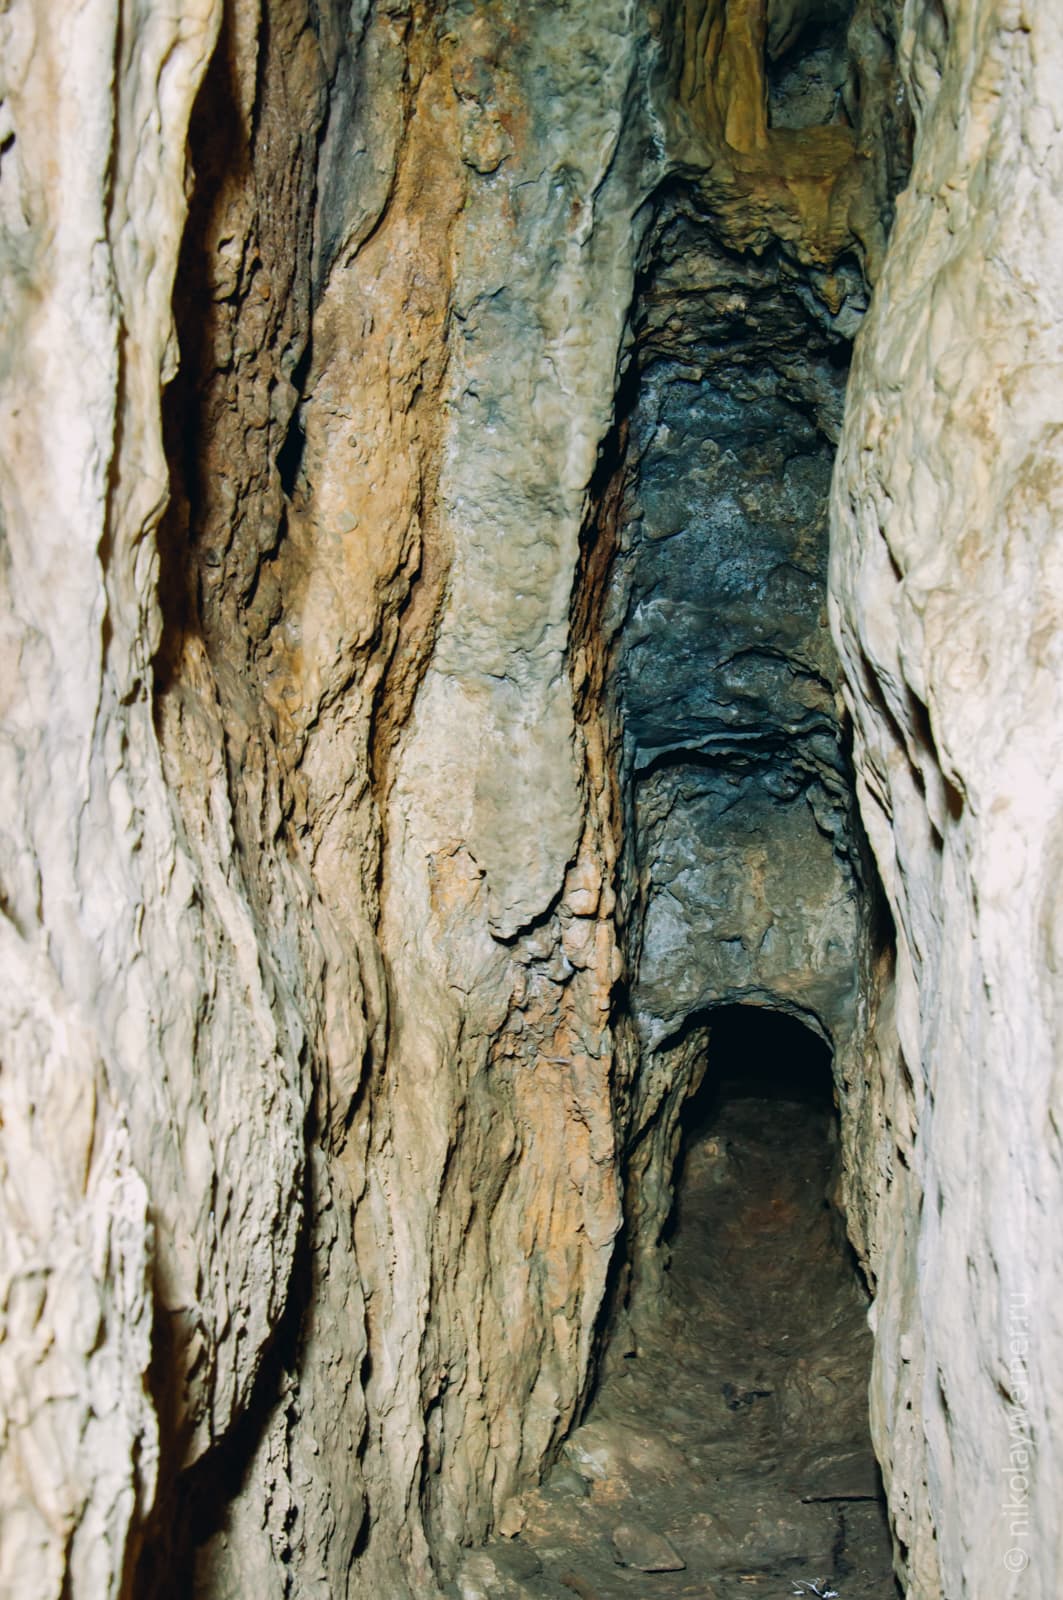 Внутри пещеры. Очень узкий, но высокий проход с вертикальными стенами. Впереди высота резко уменьшается и пещера превращается в узкую нору